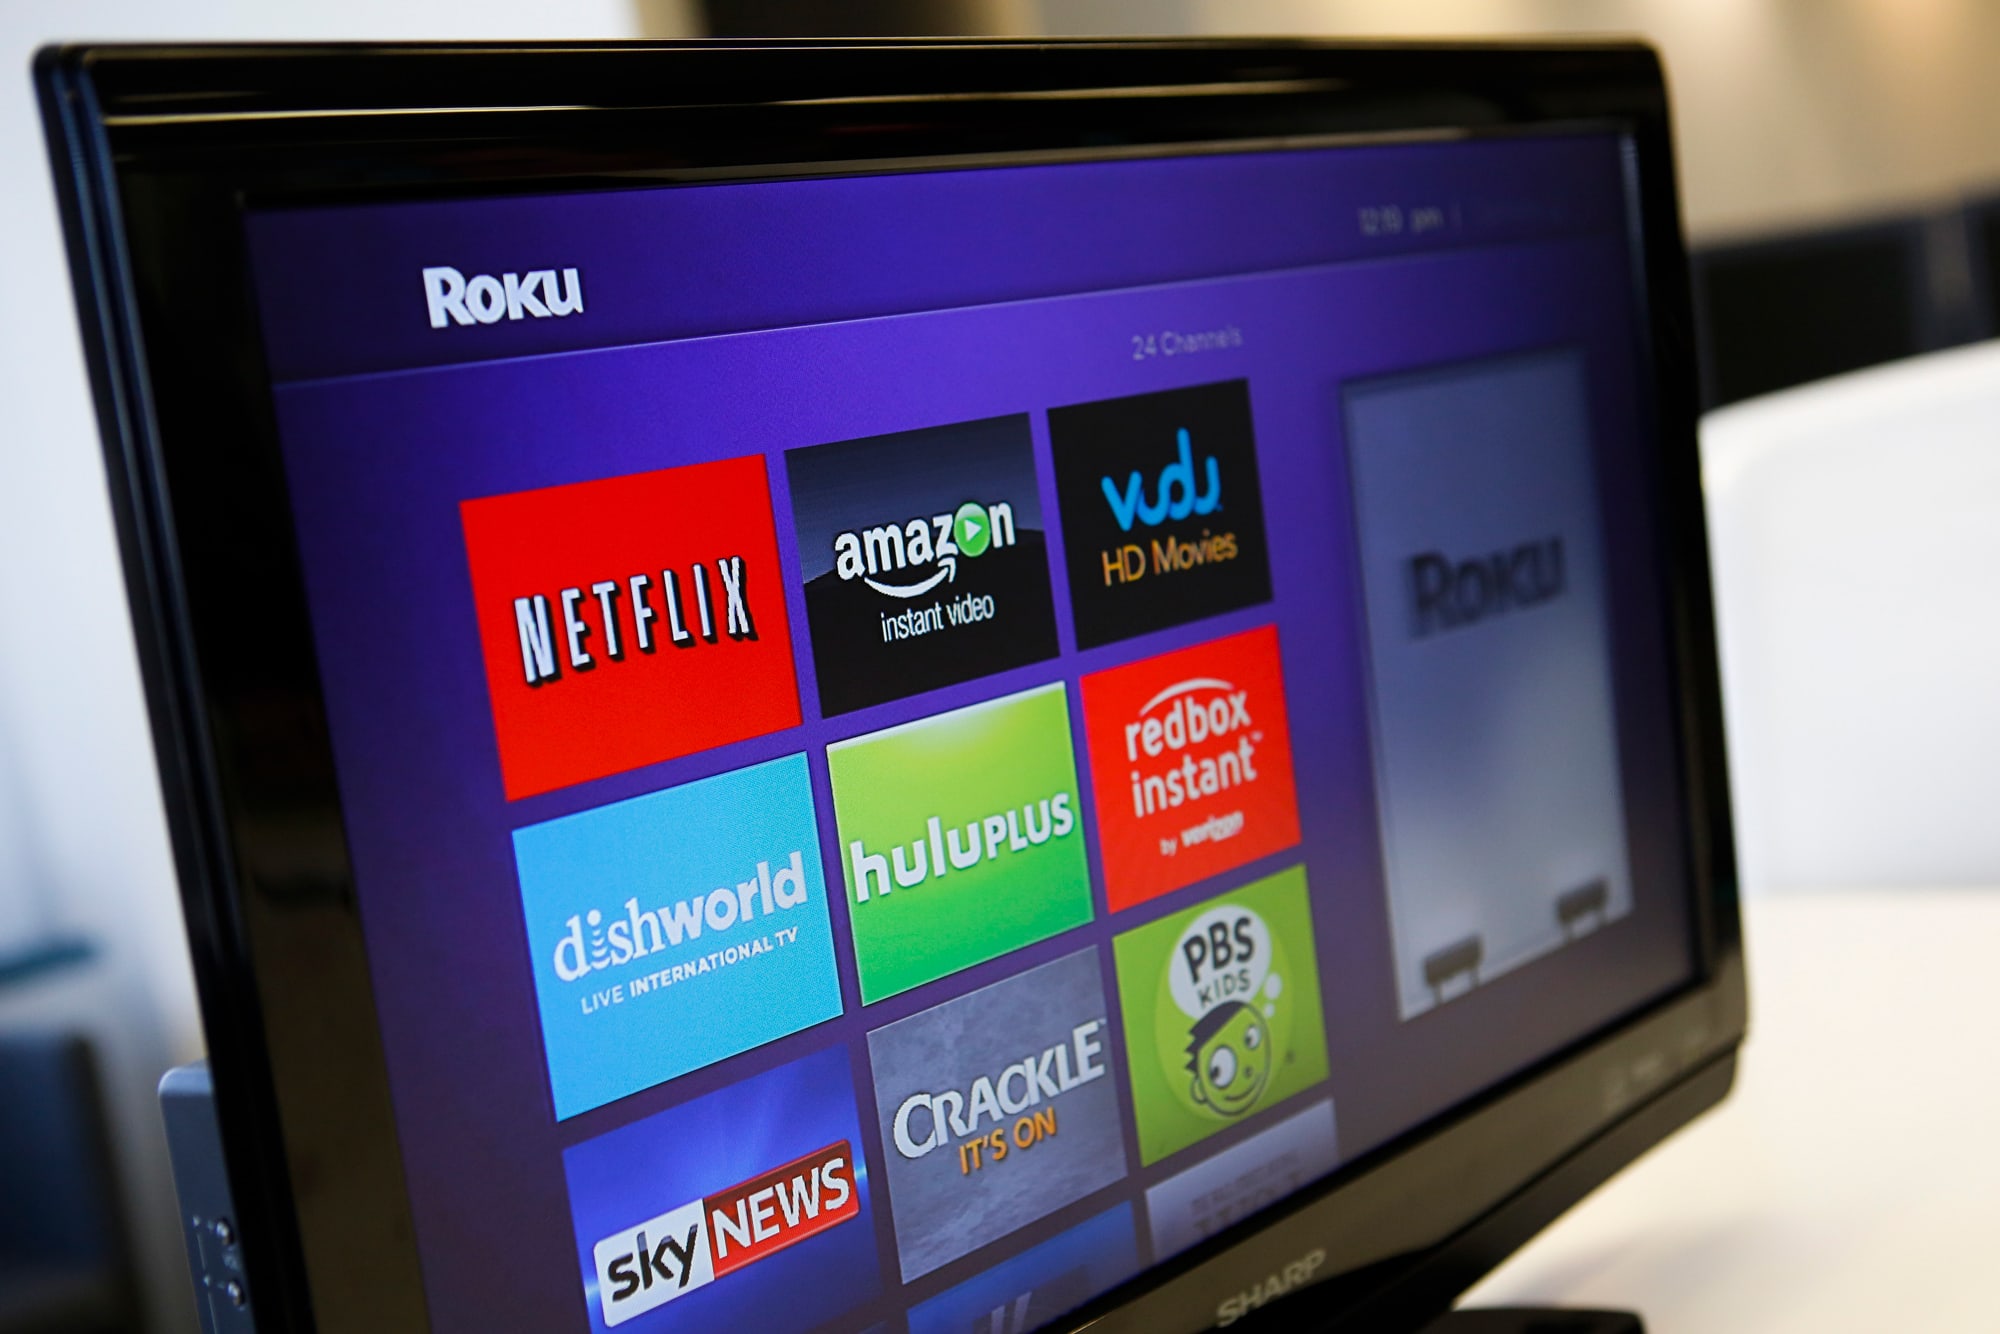 Roku shares plunge 15% after streaming gadget maker breaks earnings win streak